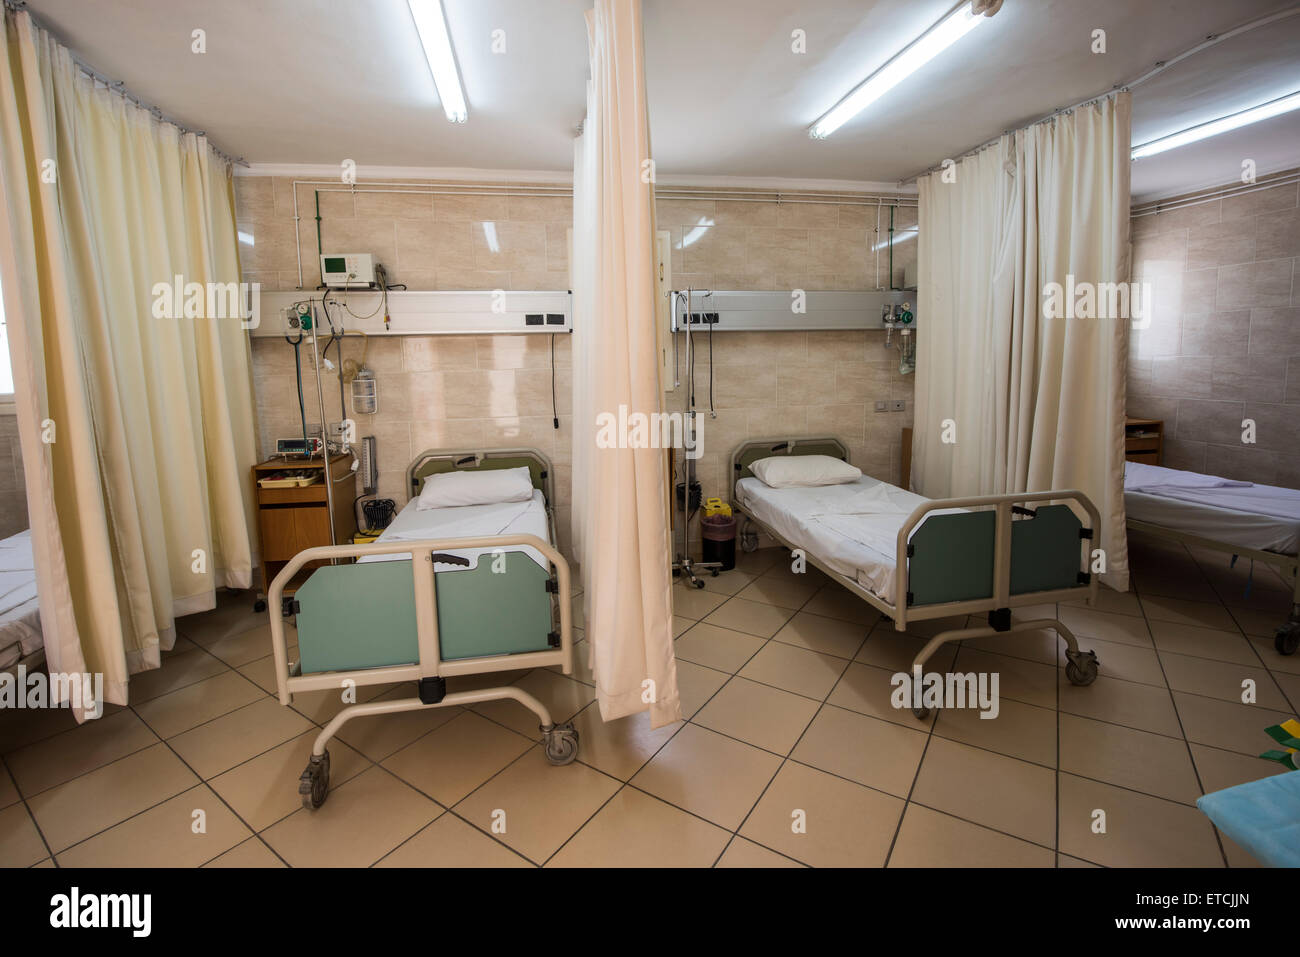 Betten in einem Krankenhaus ICU Stationszimmer Stockfoto